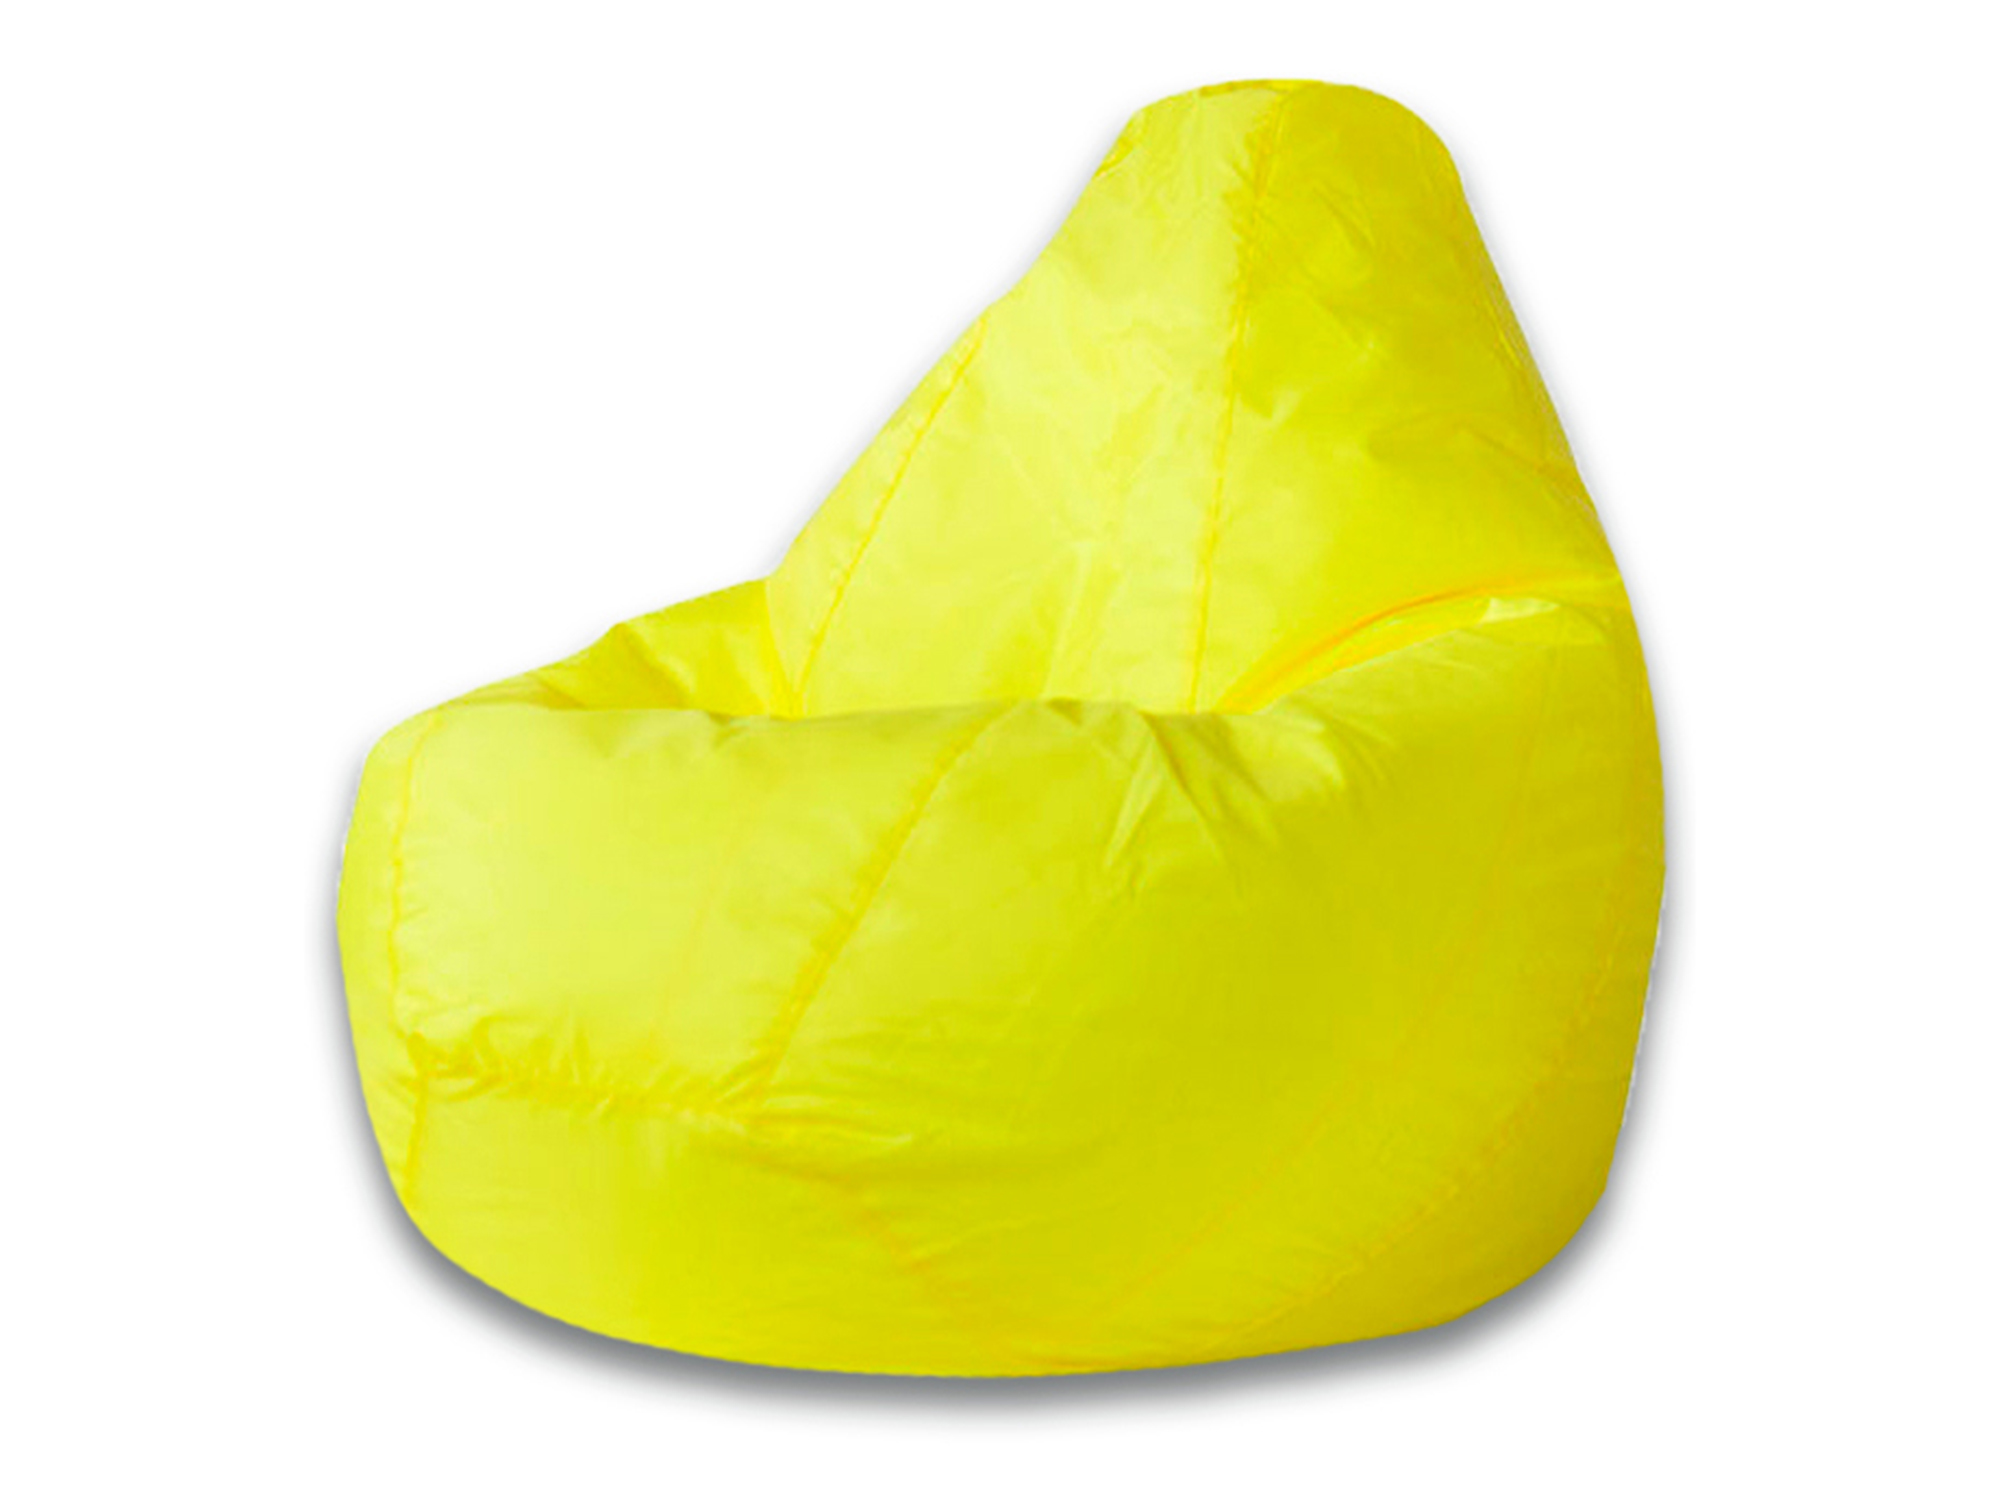 Кресло Мешок Желтое Оксфорд XL 125х85 MebelVia , Желтый, Оксфорд кресло мешок желтое оксфорд xl 125х85 mebelvia желтый оксфорд